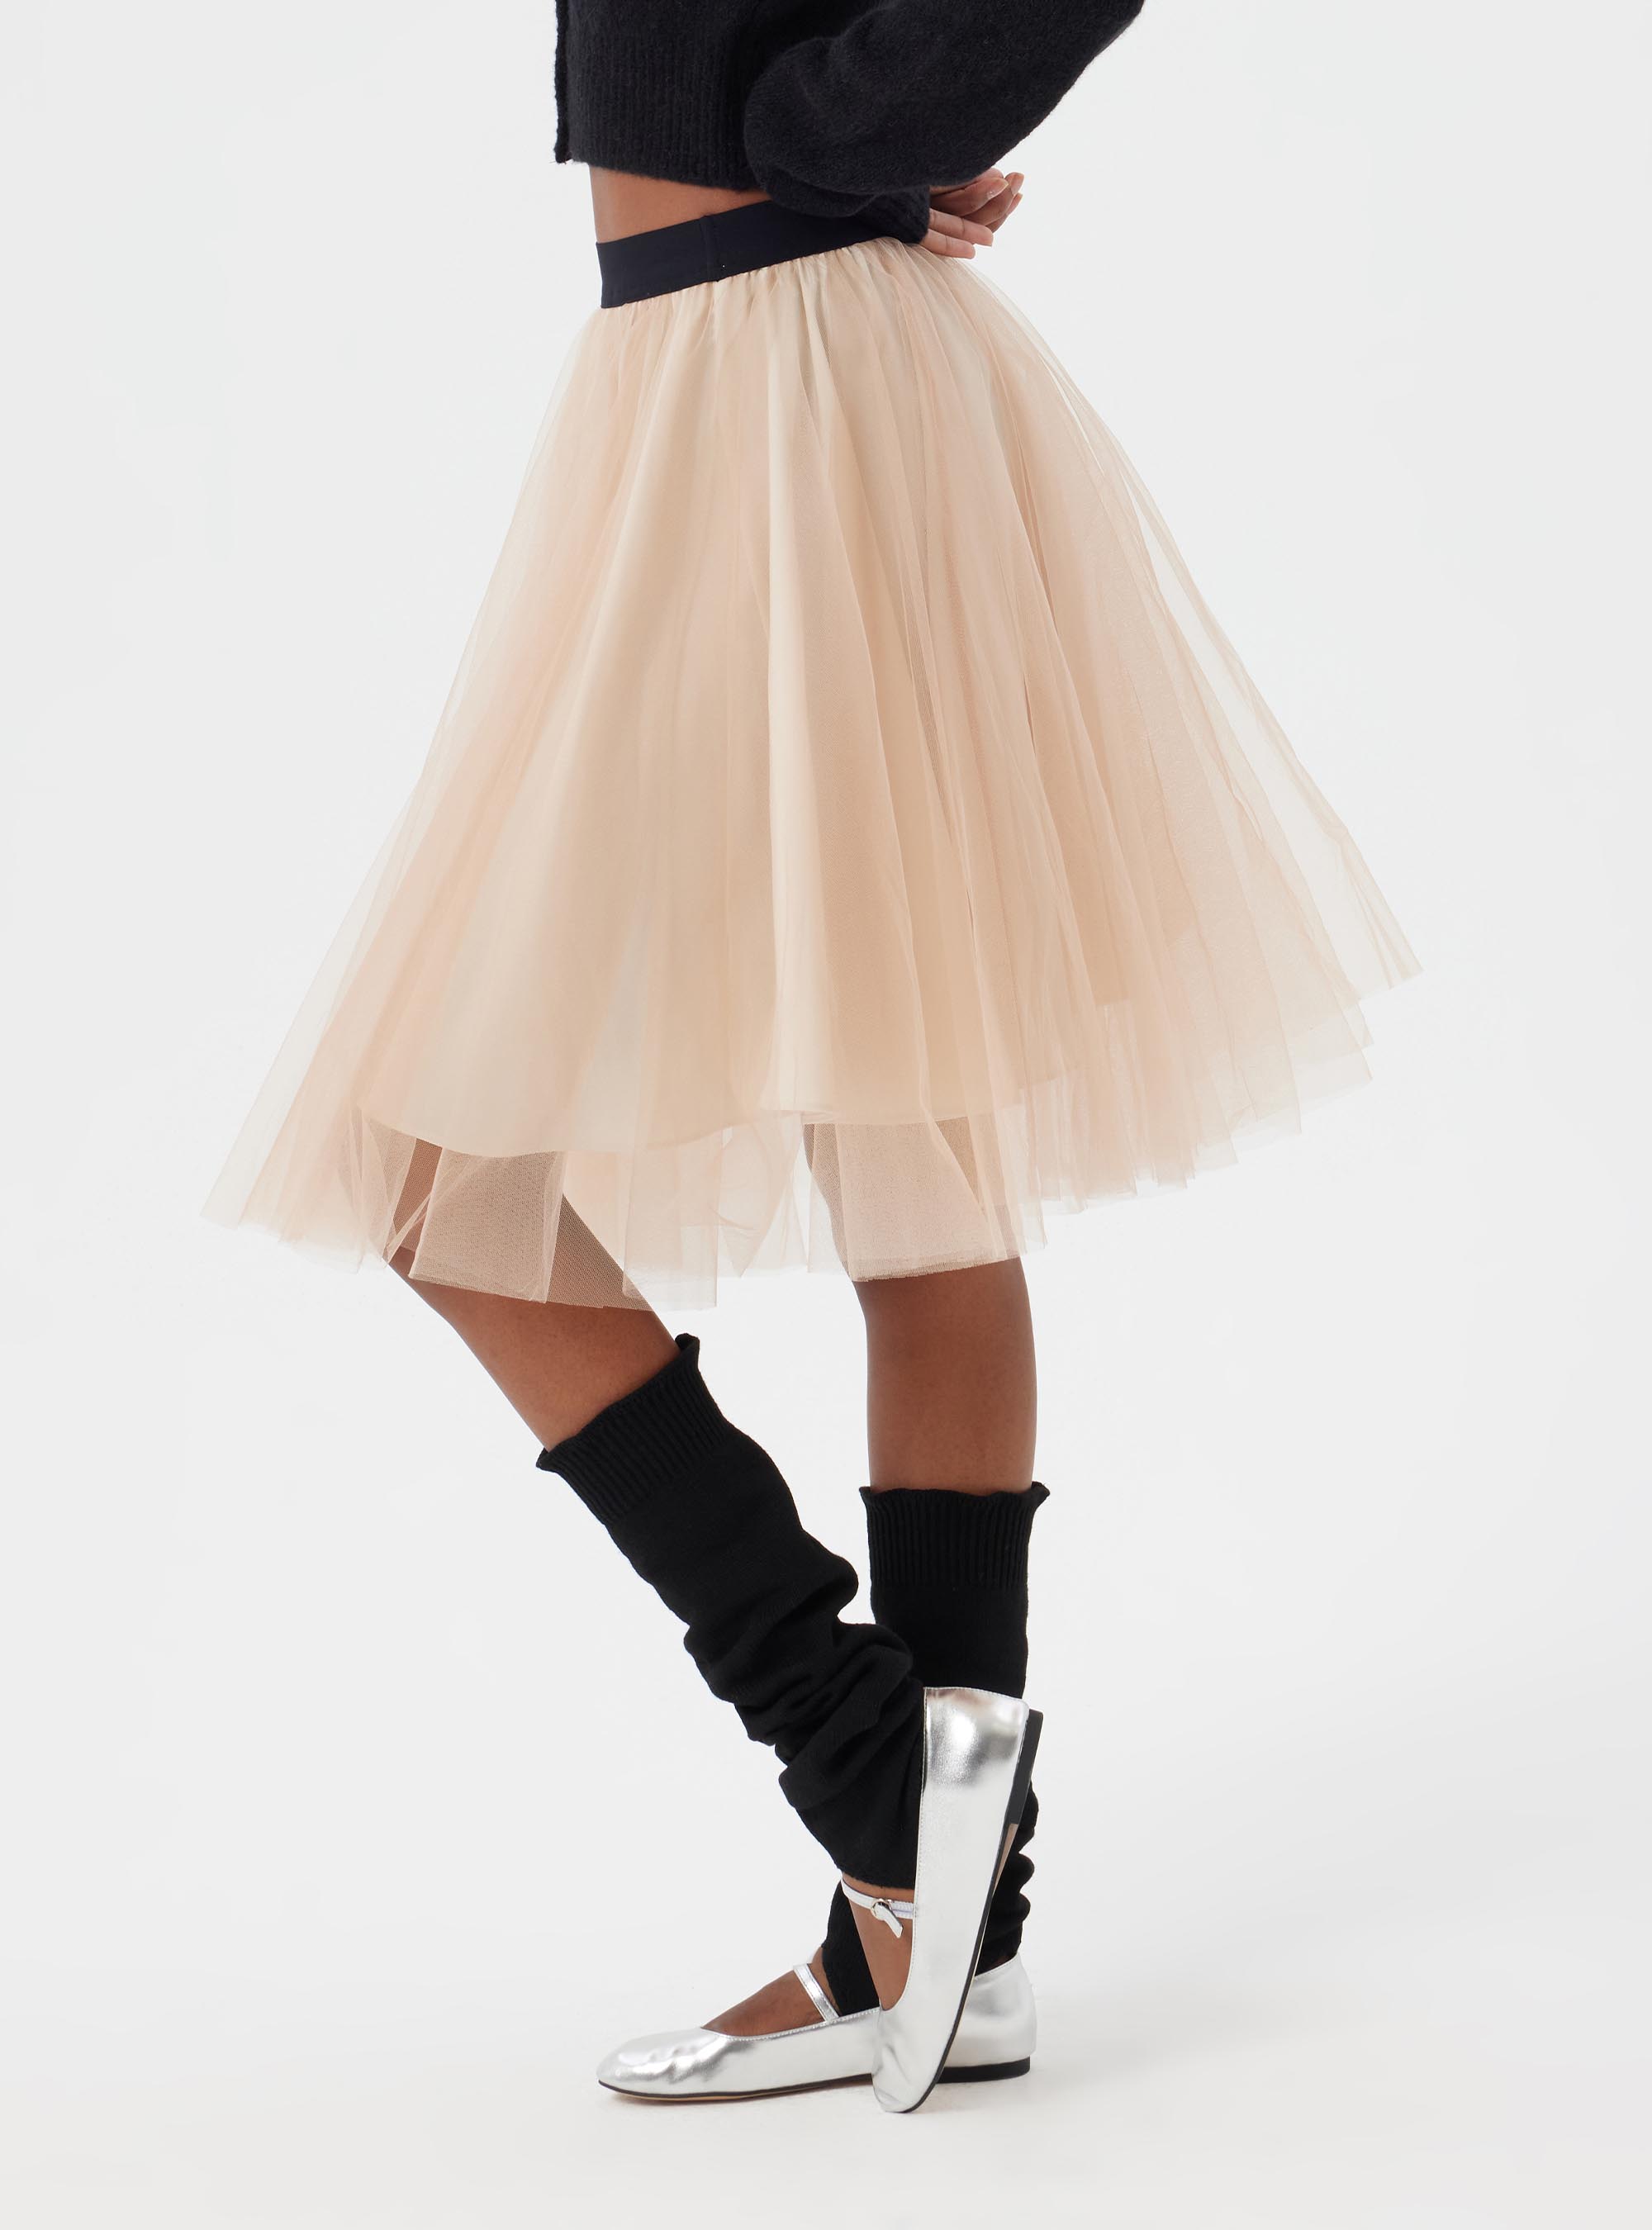 앙젤리끄 튜튜 스커트  Angelique tutu skirt (2color)